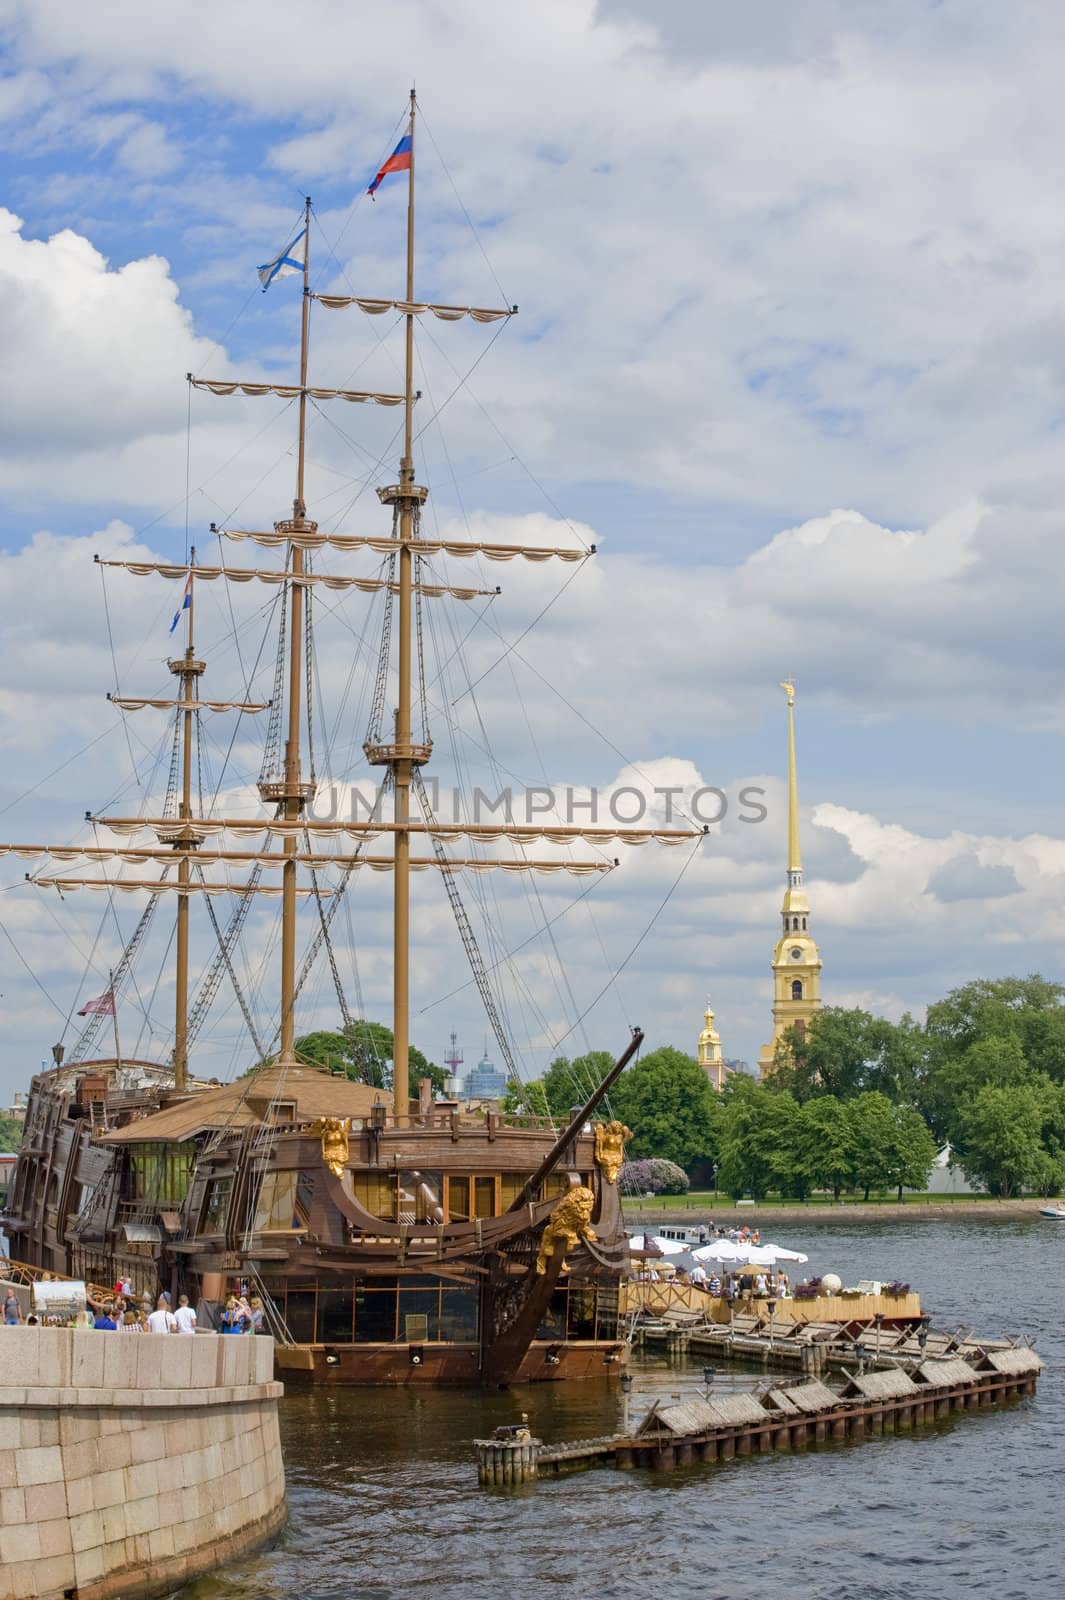 View on Neva river in Sankt Petersburg, Russia